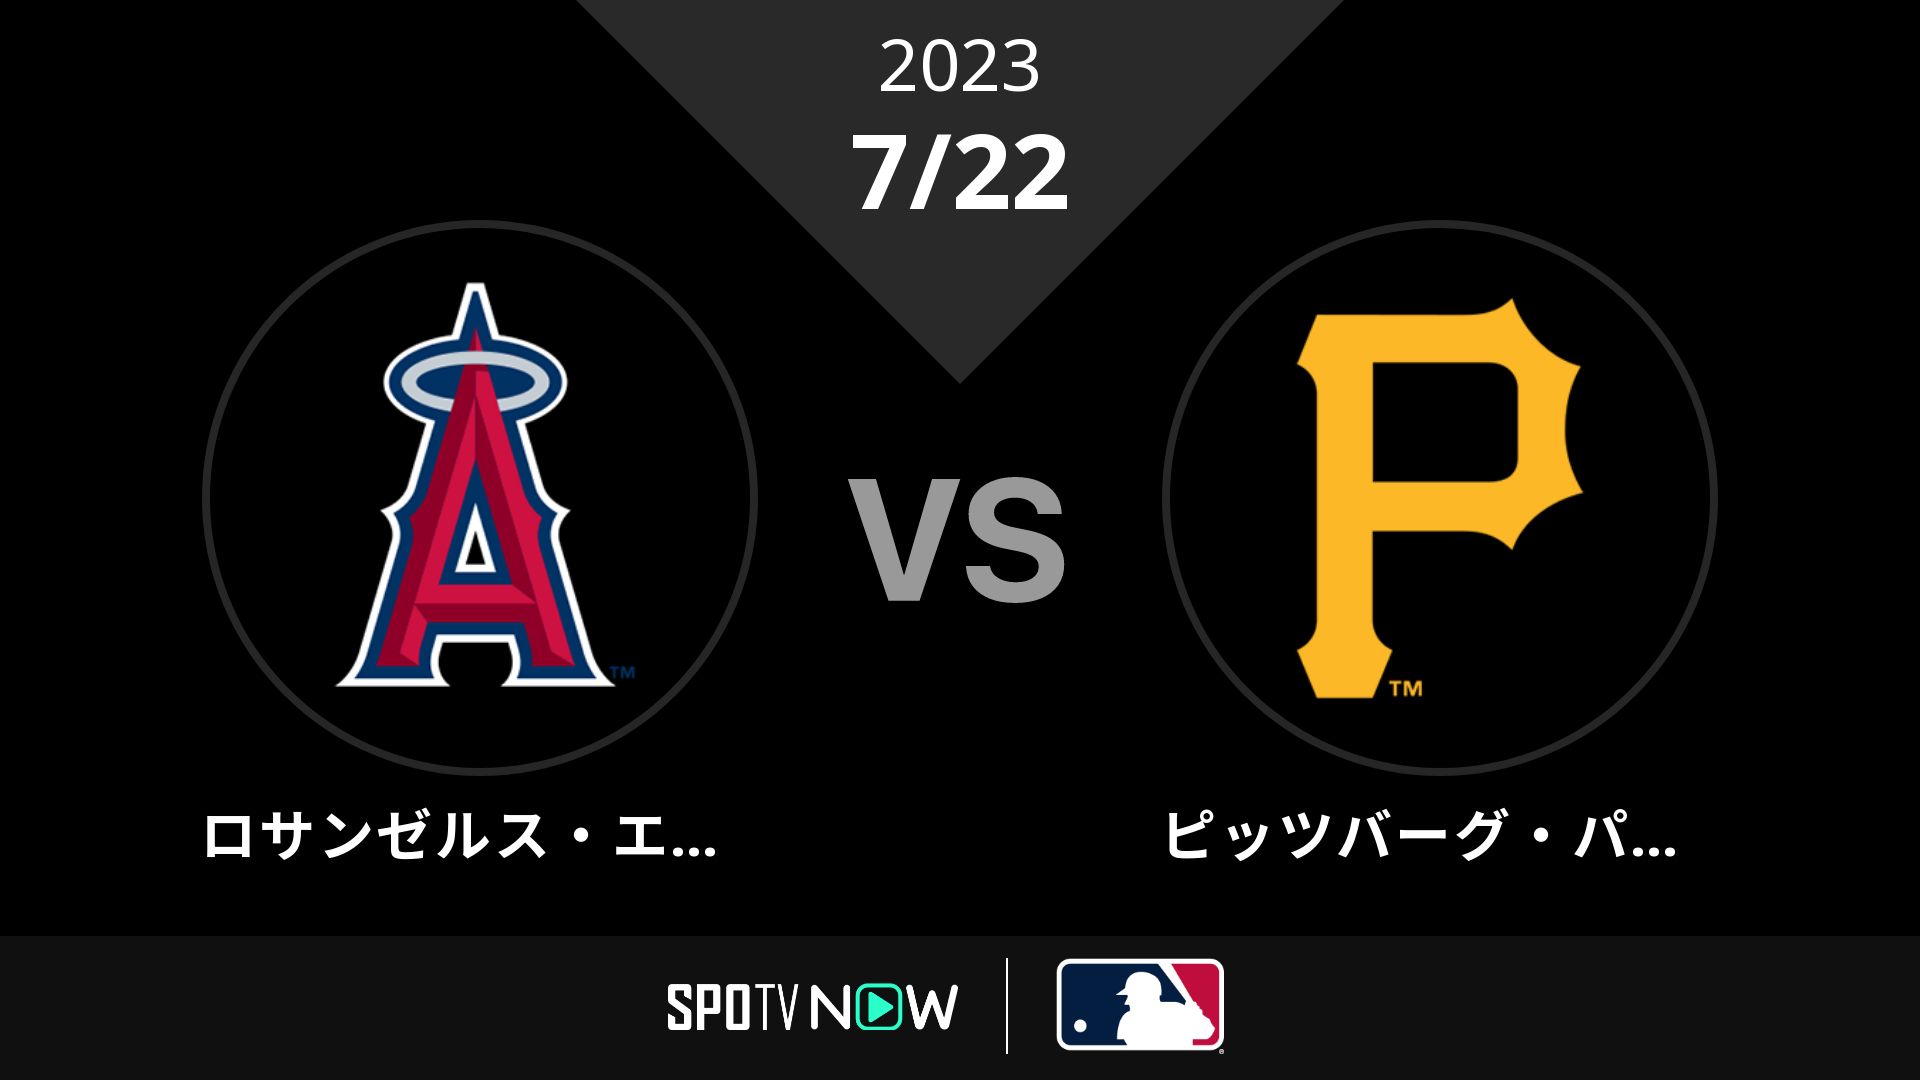 2023/7/22 エンゼルス vs パイレーツ [MLB]